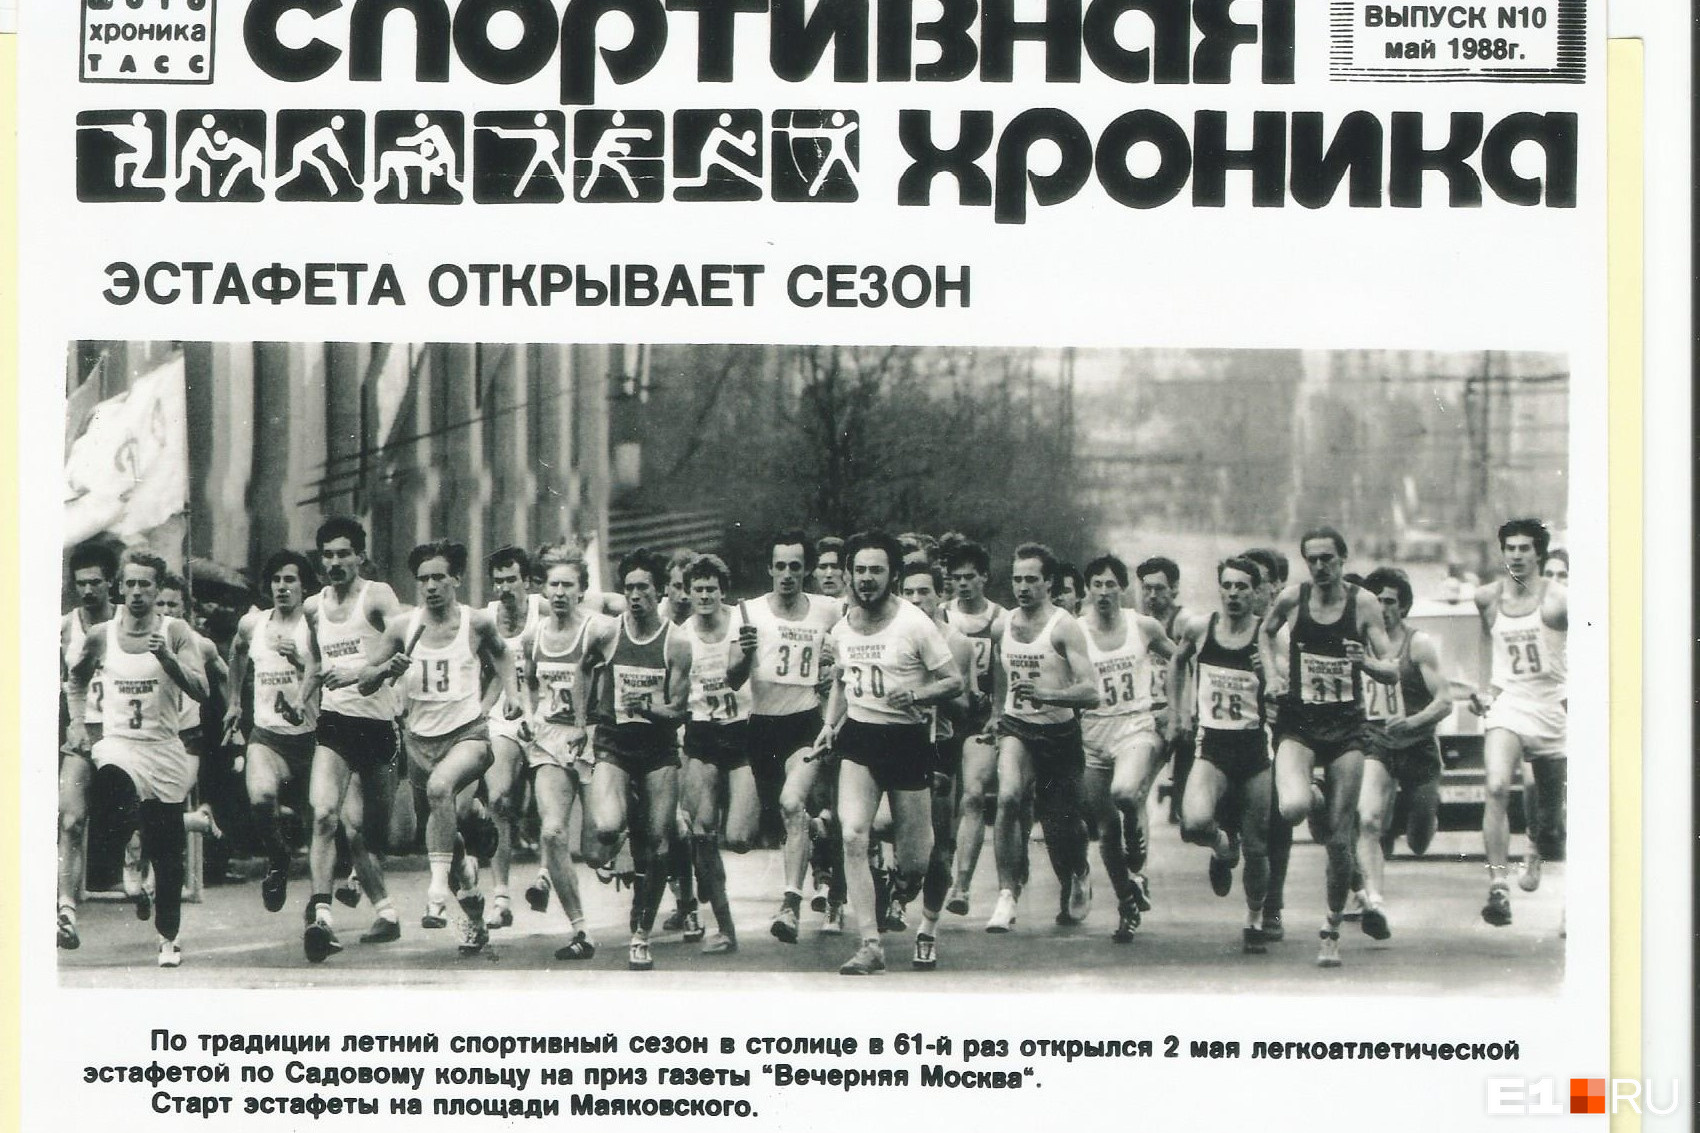 Владислав всю свою жизнь посвятил легкой атлетике. Сначала как спортсмен (шестой слева), затем как тренер